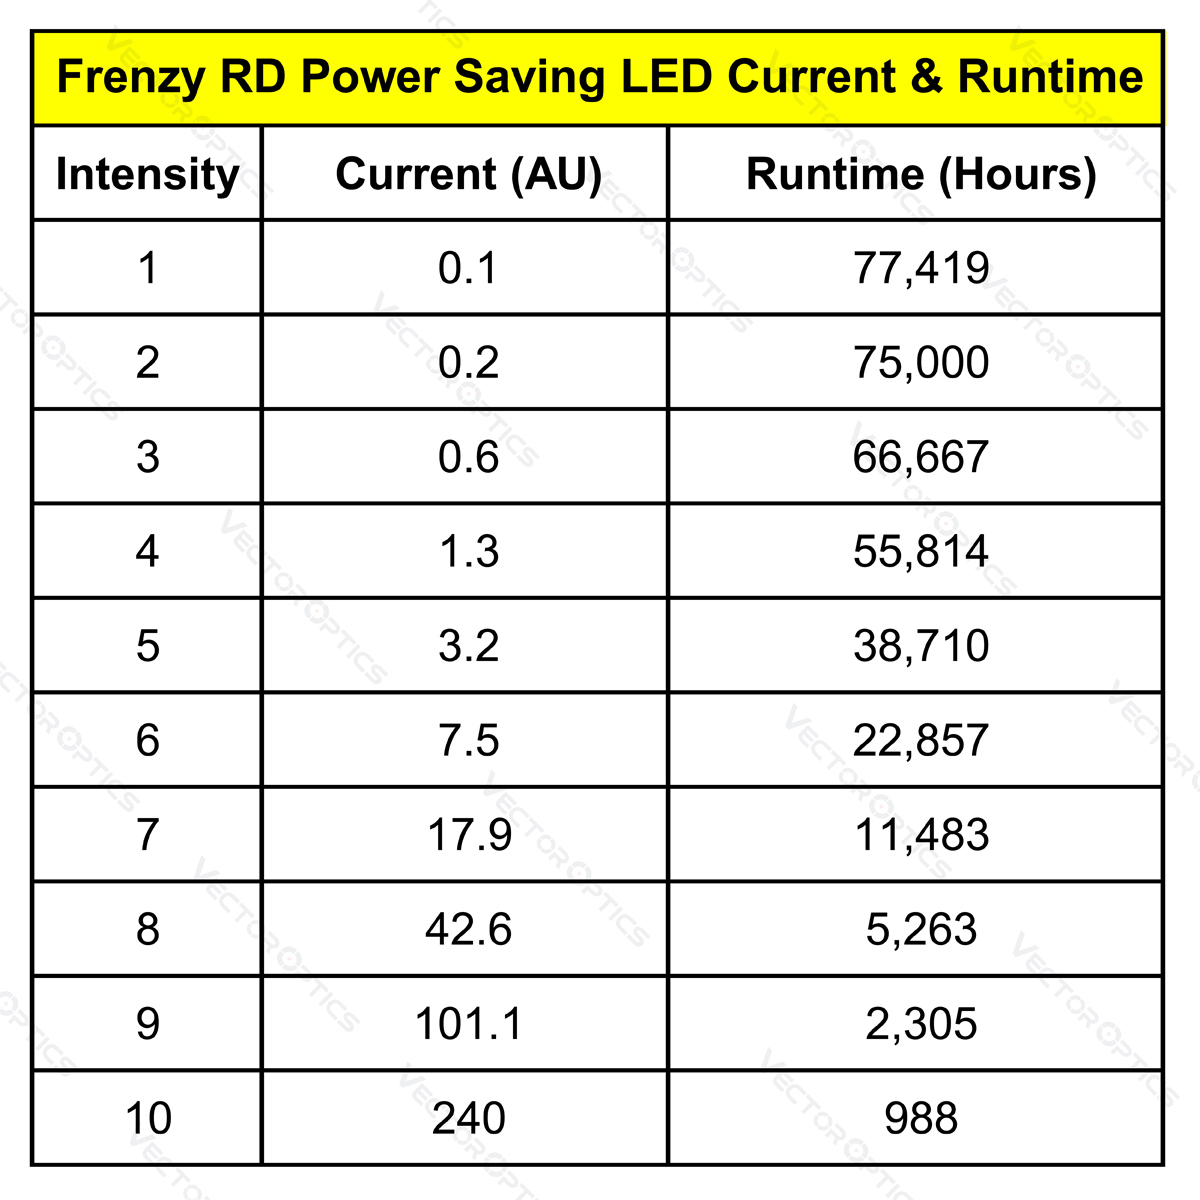 Frenzy Acom Power Saving LED Current & Runtime